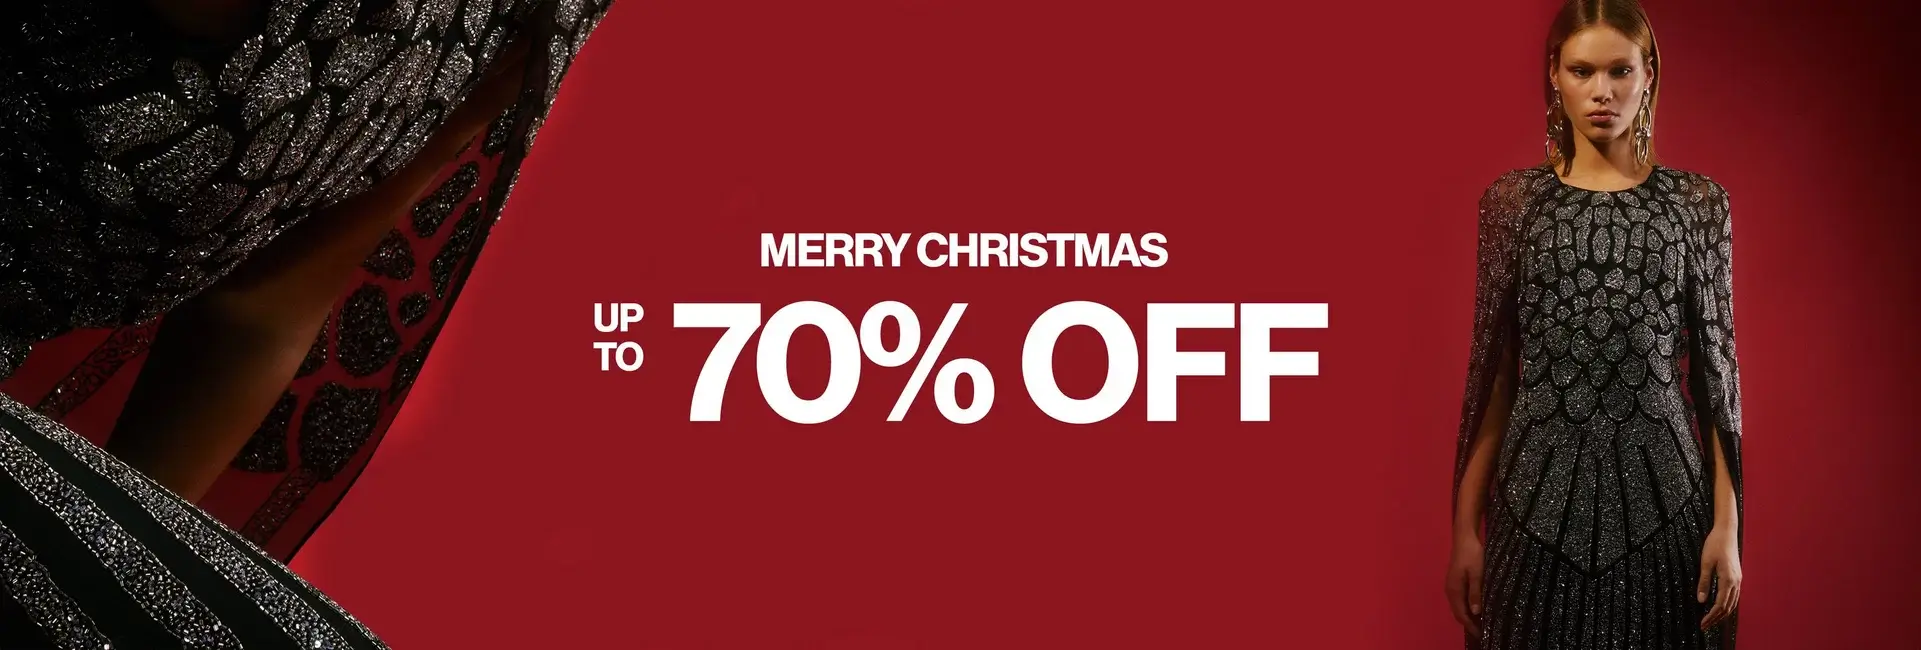 Karen Millen - Christmas Sale Is Live - Get Up To 70% Off